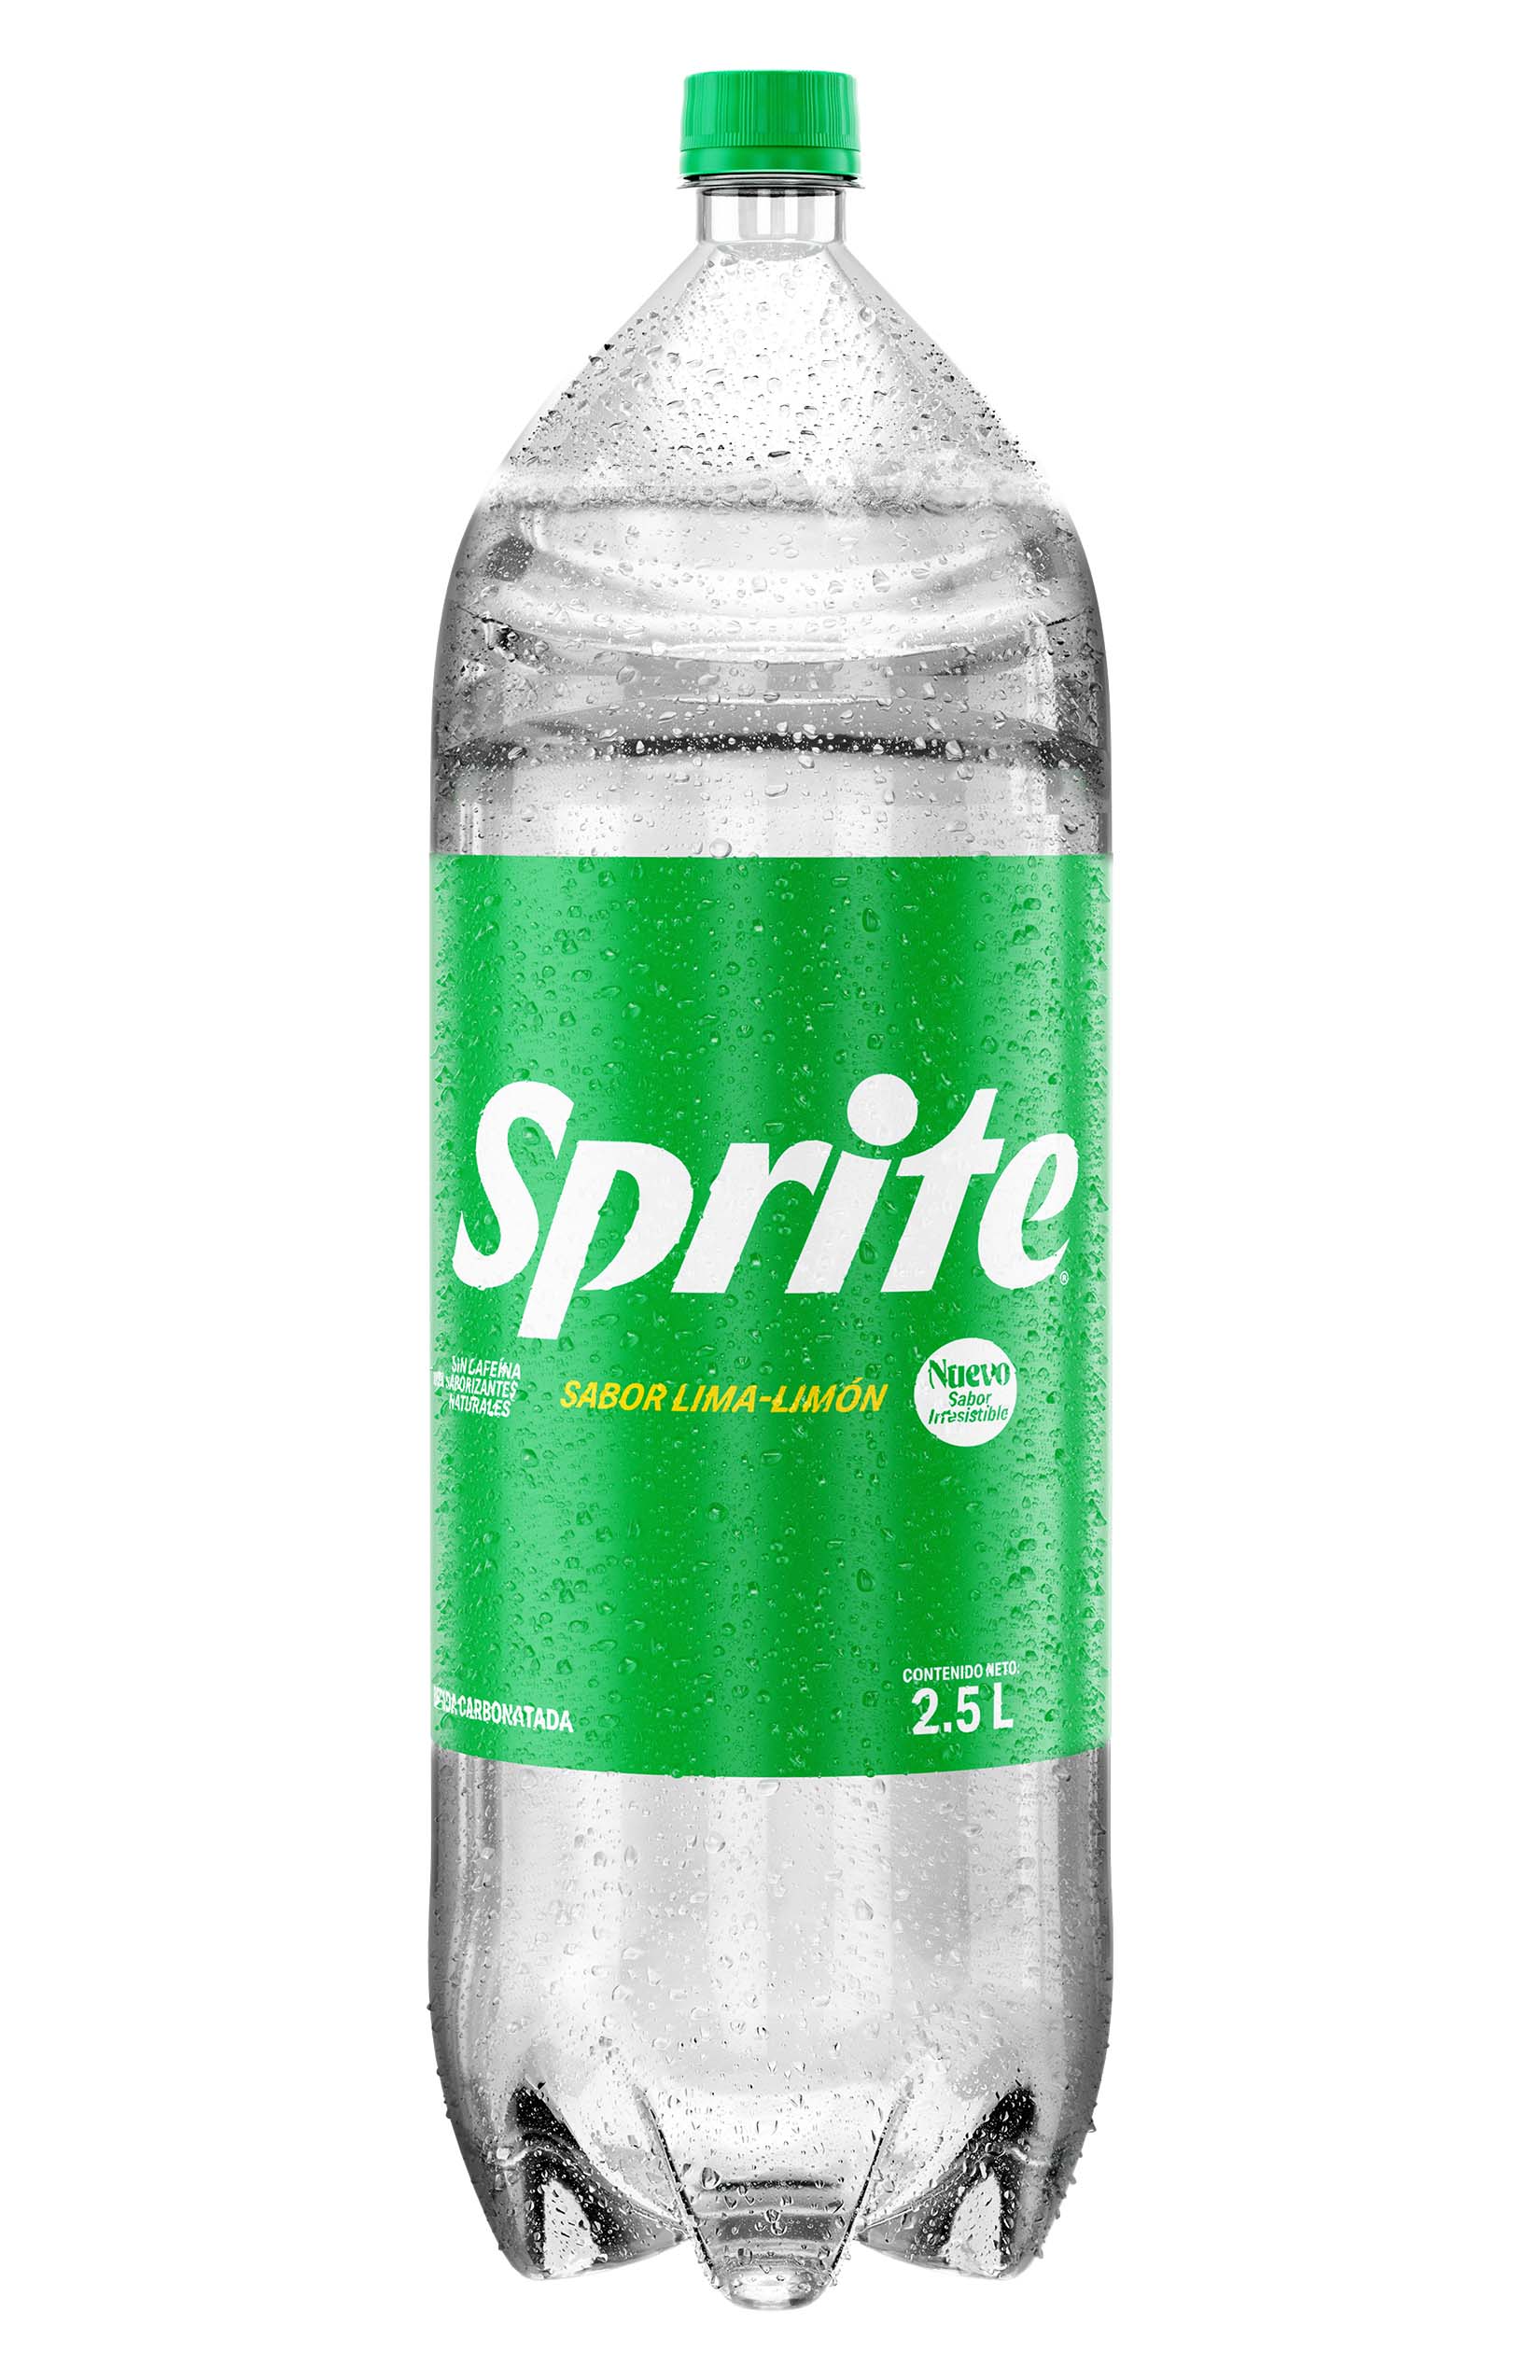 Botella de Sprite 2.5 L